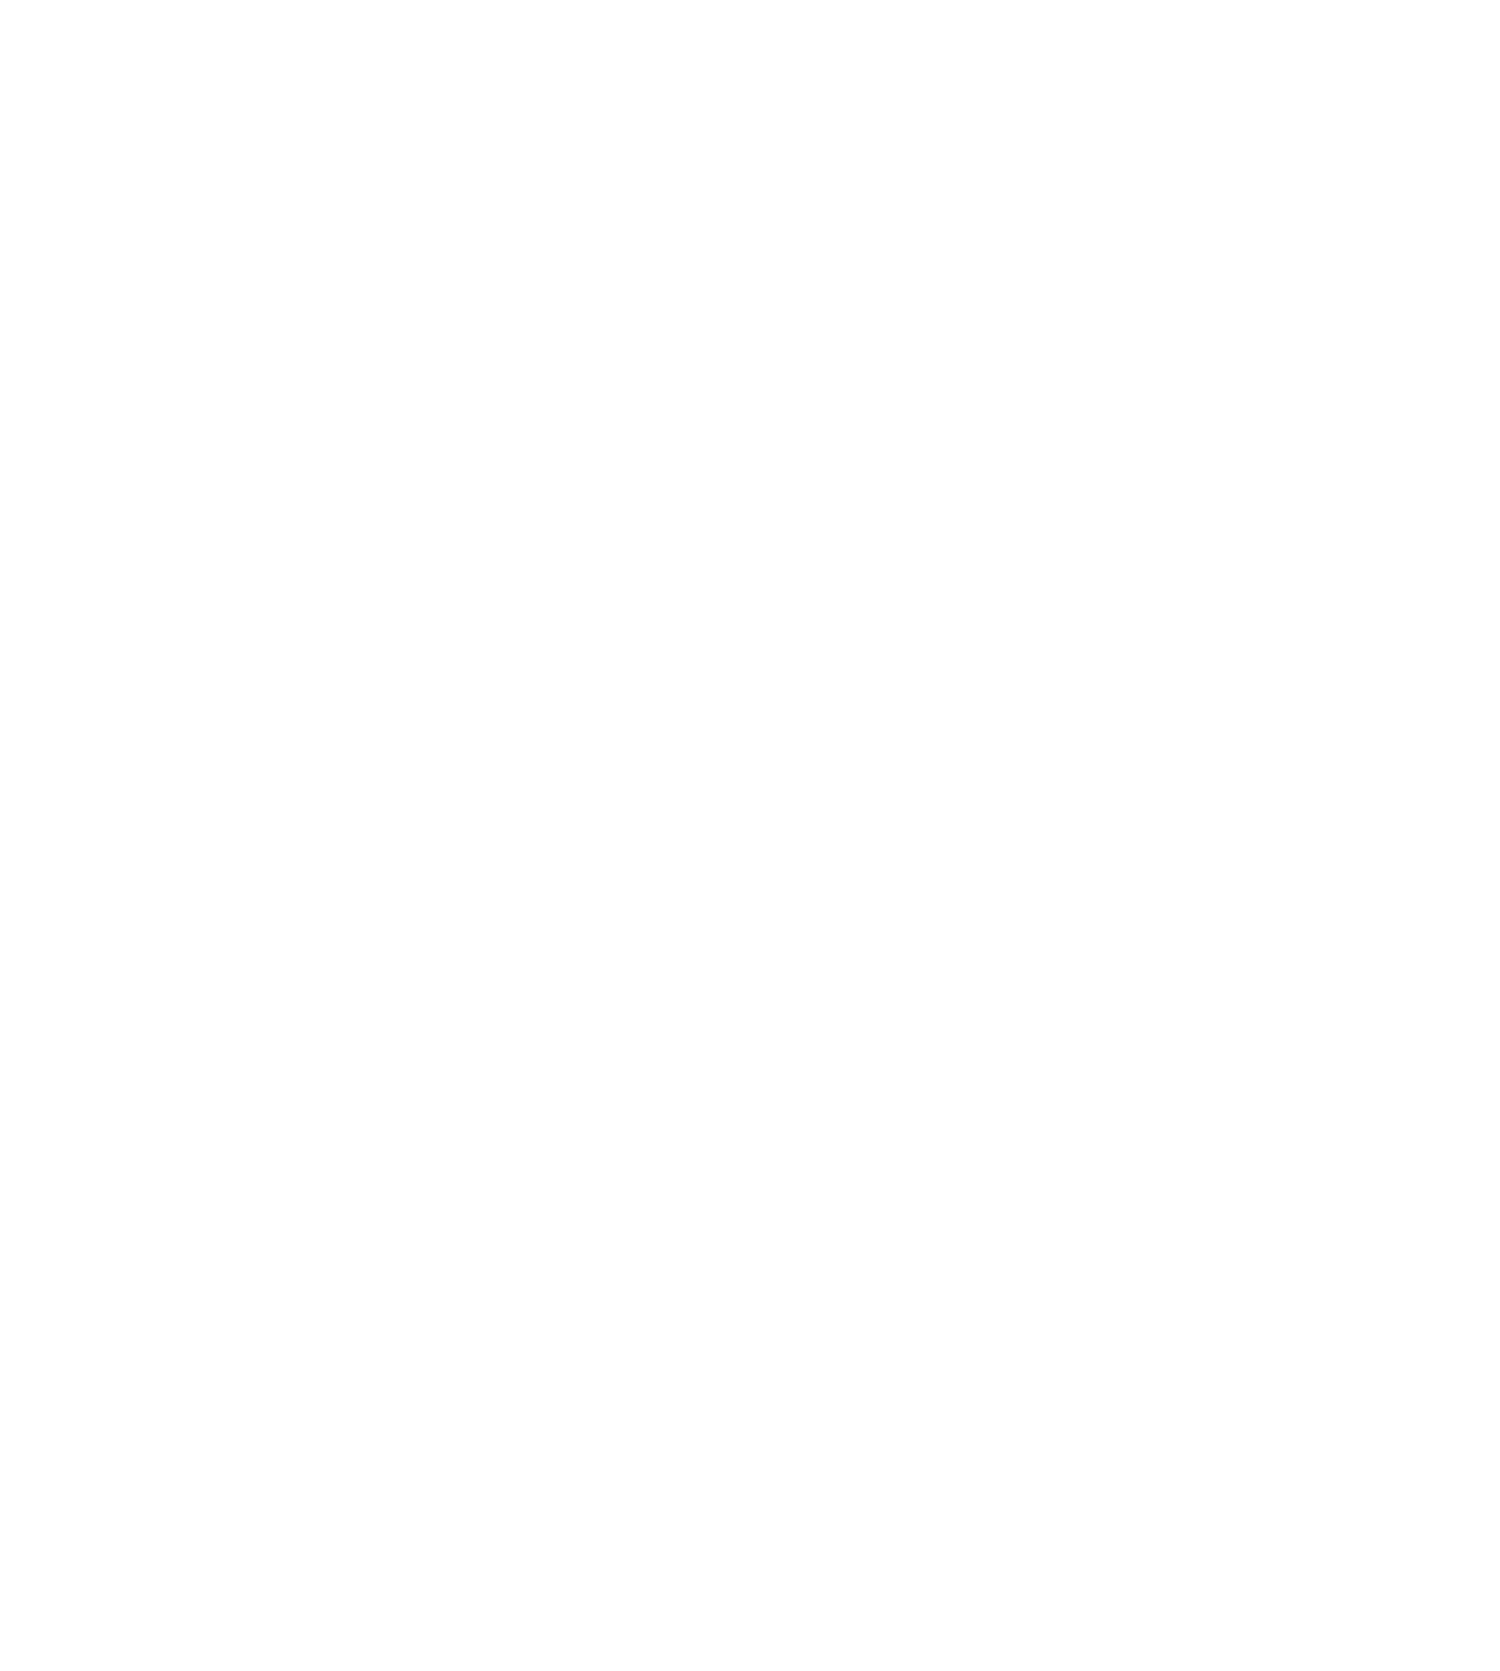 Black Platinum Illusions, LLC